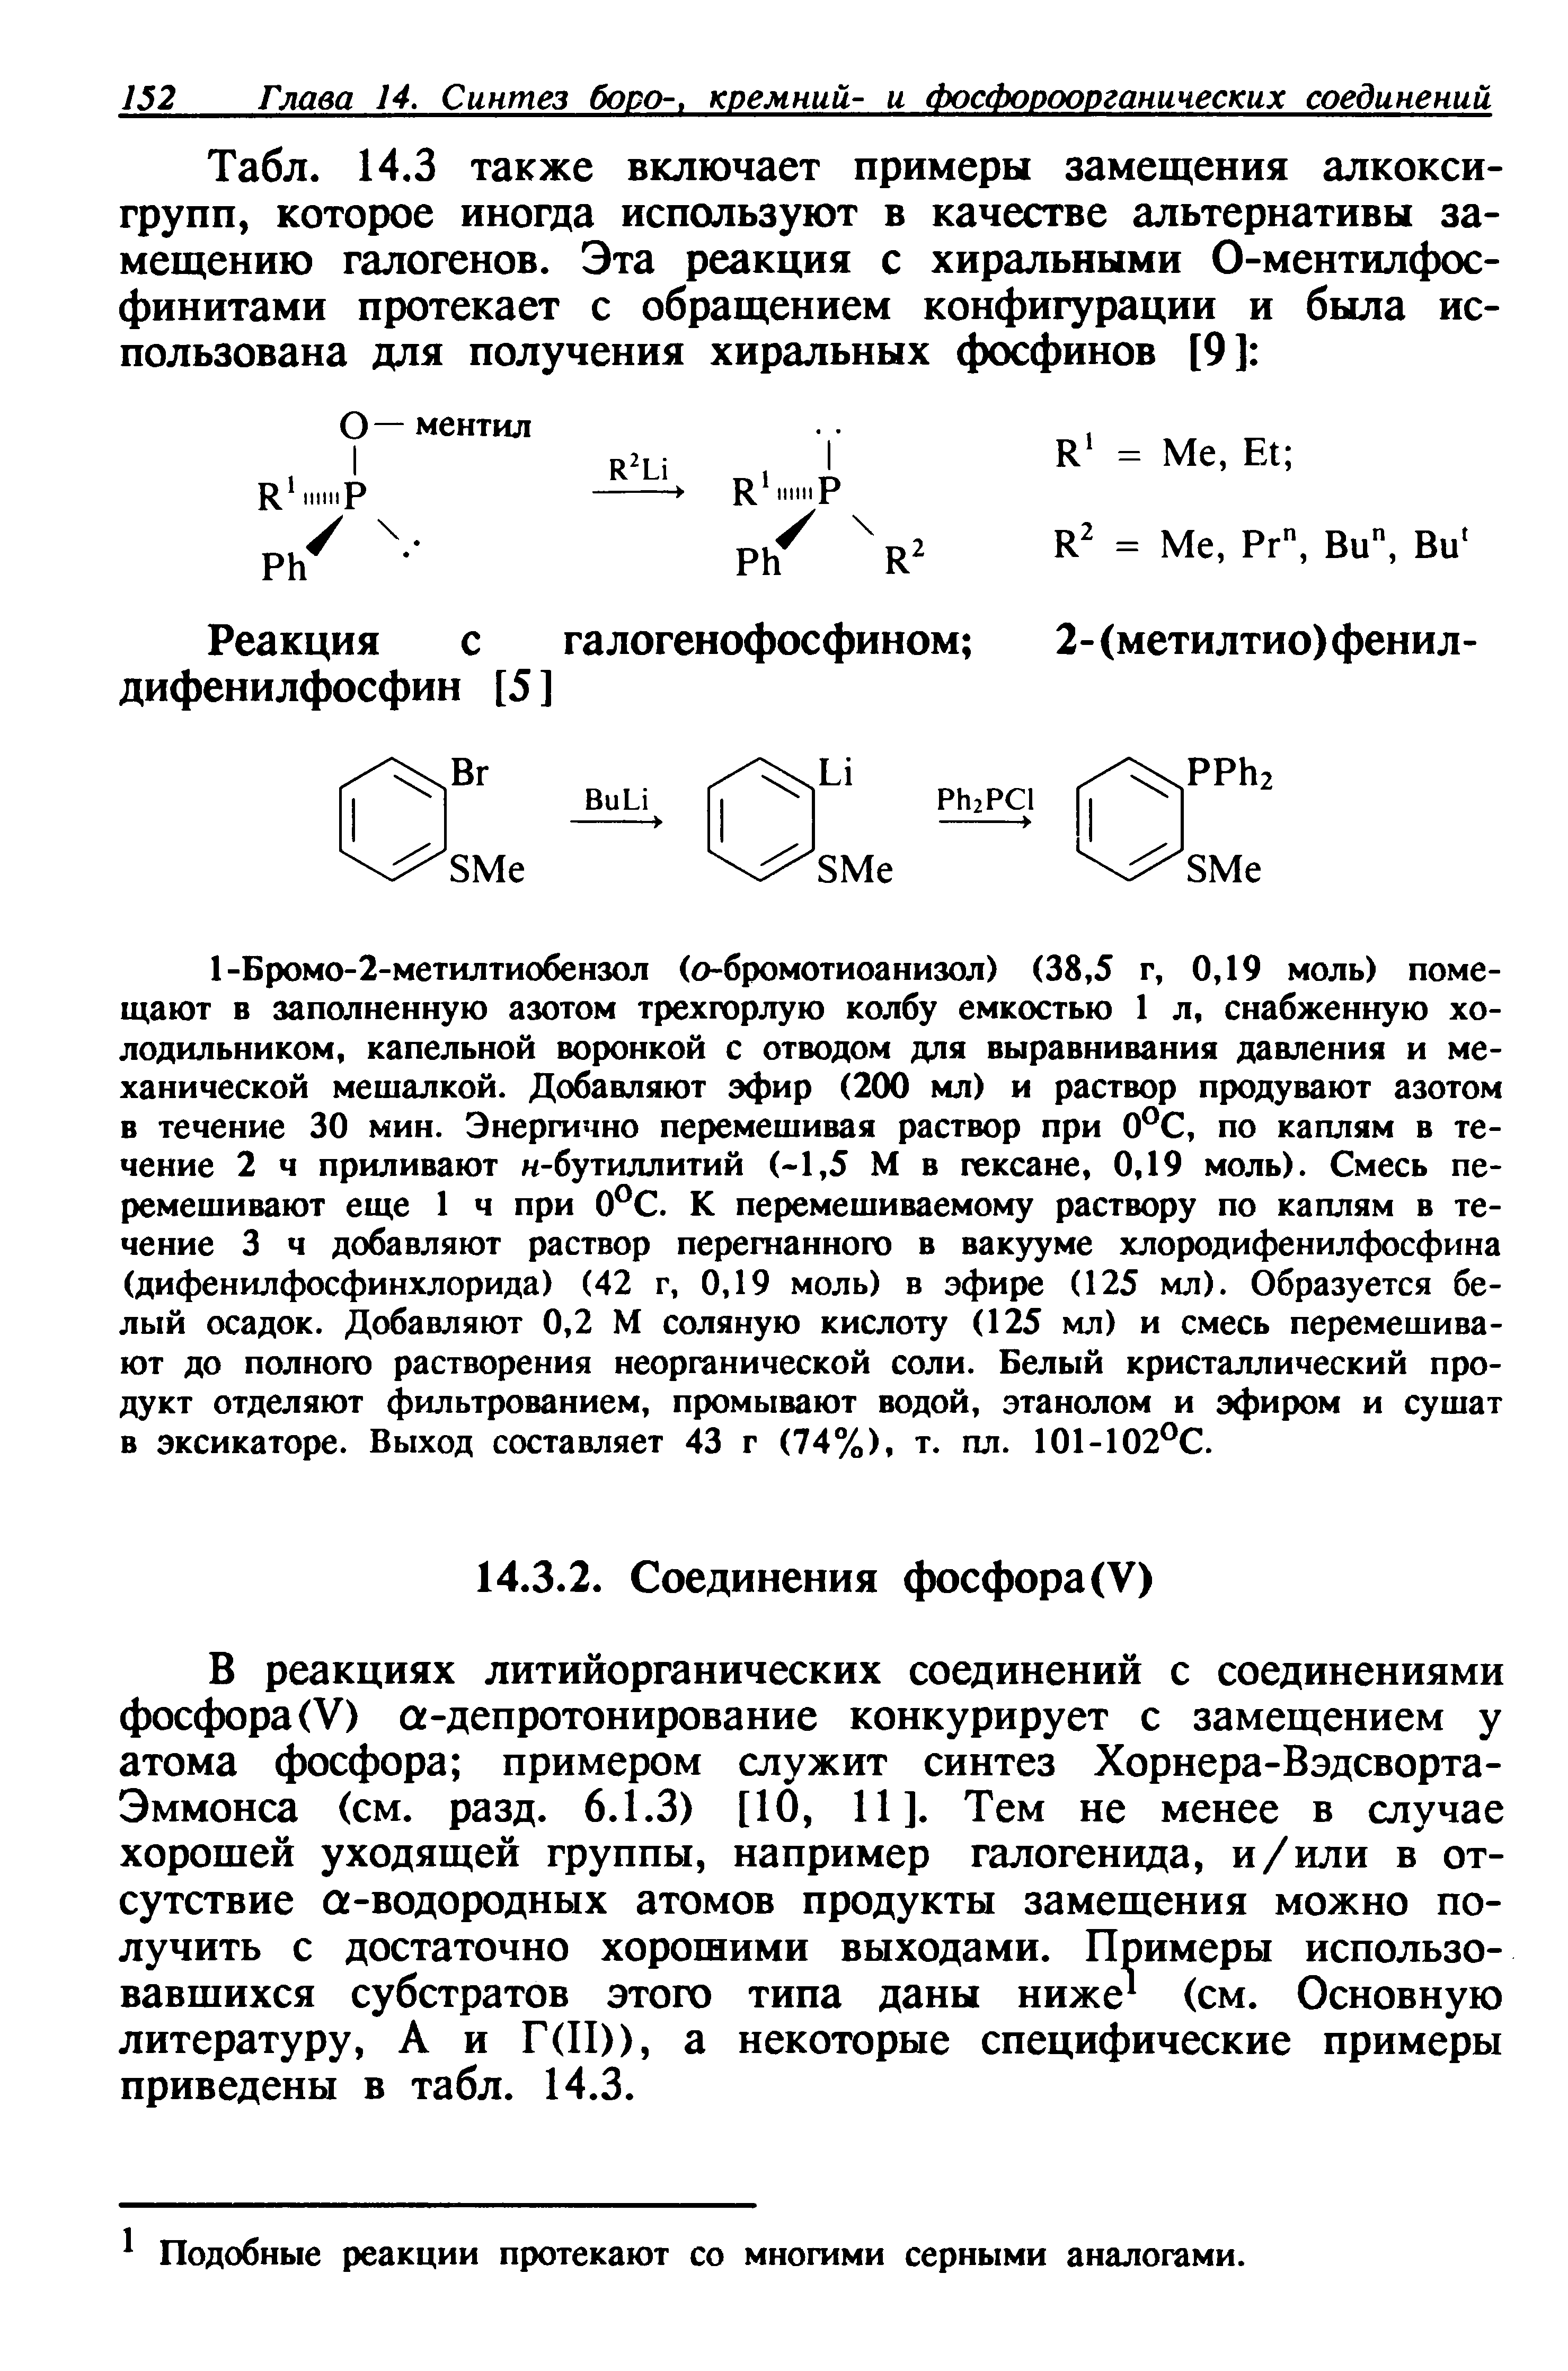 В реакциях литийорганических соединений с соединениями фосфора (V) а-депротонирование конкурирует с замещением у атома фосфора примером служит синтез Хорнера-Вэдсворта-Эммонса (см. разд. 6.1.3) [10, 11]. Тем не менее в случае хорошей уходящей группы, например галогенида, и/или в отсутствие а-водородных атомов продукты замещения можно получить с достаточно хорошими выходами. Примеры использовавшихся субстратов этого типа даны ниже (см. Основную литературу, А и Г(П)), а некоторые специфические примеры приведены в табл. 14.3.